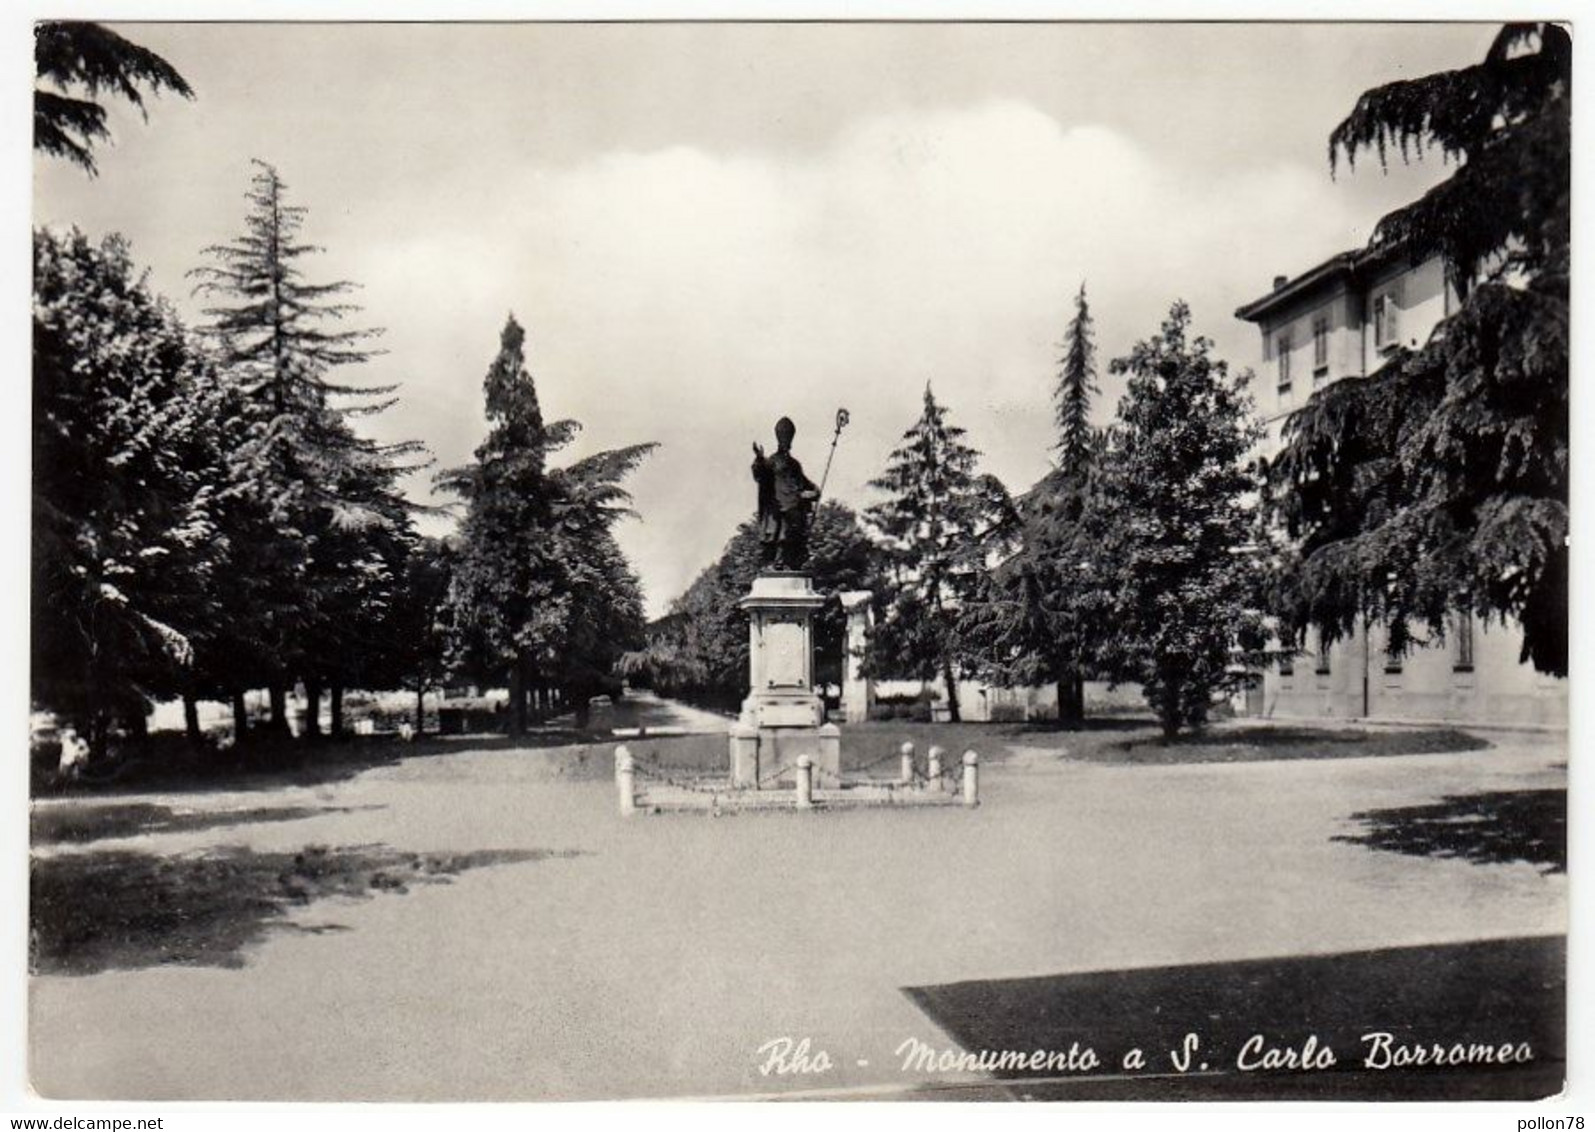 RHO - MONUMENTO A S. CARLO BORROMEO - MILANO - 1958 - Rho